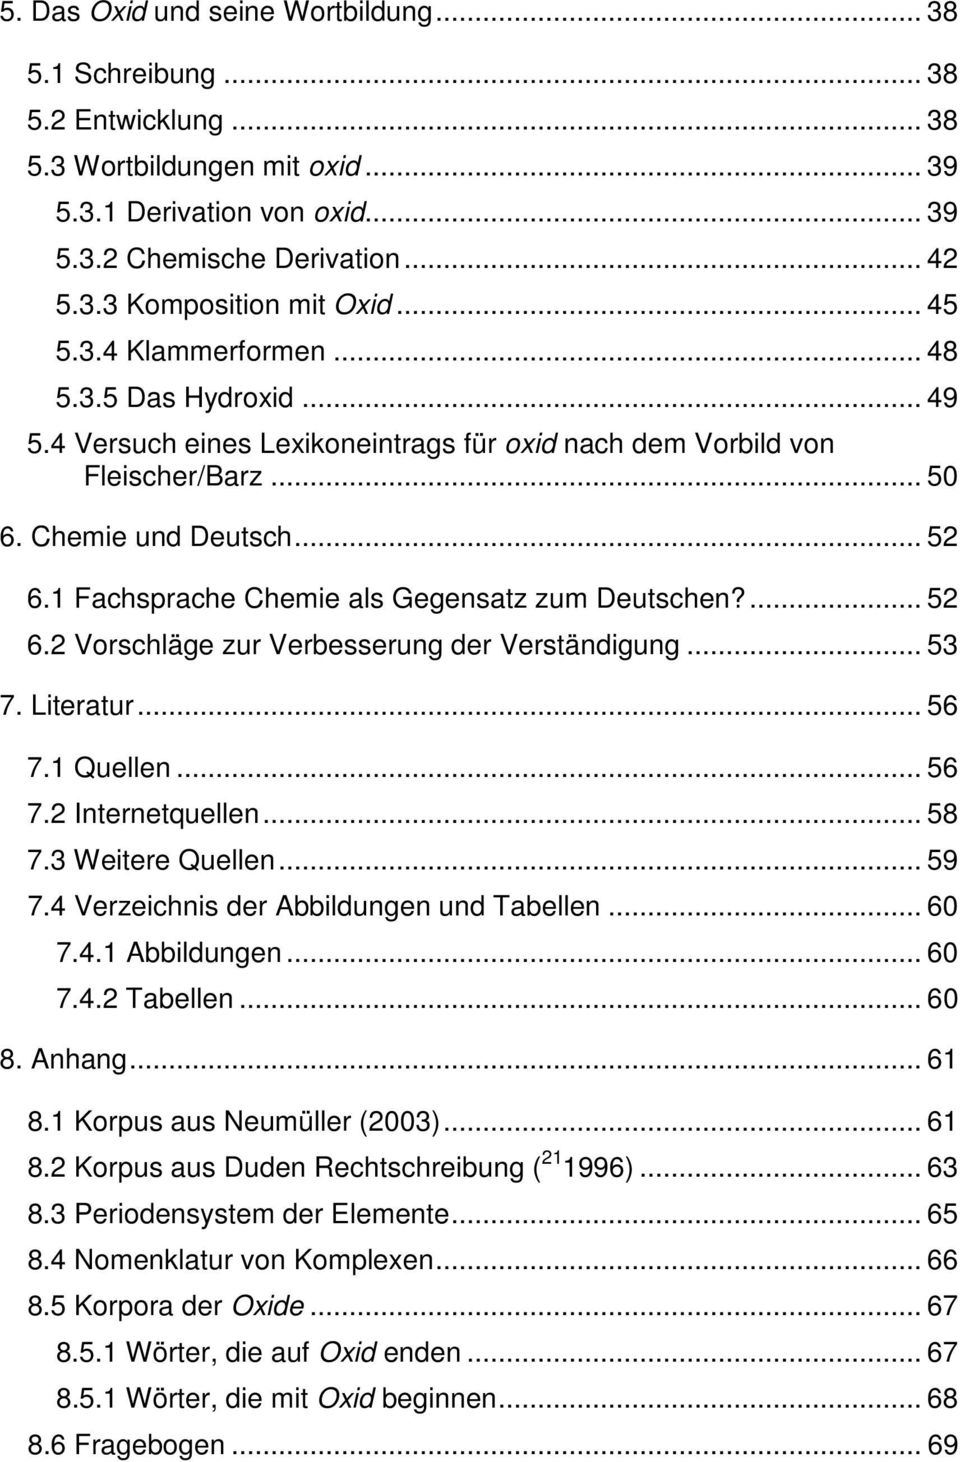 1 Fachsprache Chemie als Gegensatz zum Deutschen?... 52 6.2 Vorschläge zur Verbesserung der Verständigung... 53 7. Literatur... 56 7.1 Quellen... 56 7.2 Internetquellen... 58 7.3 Weitere Quellen.